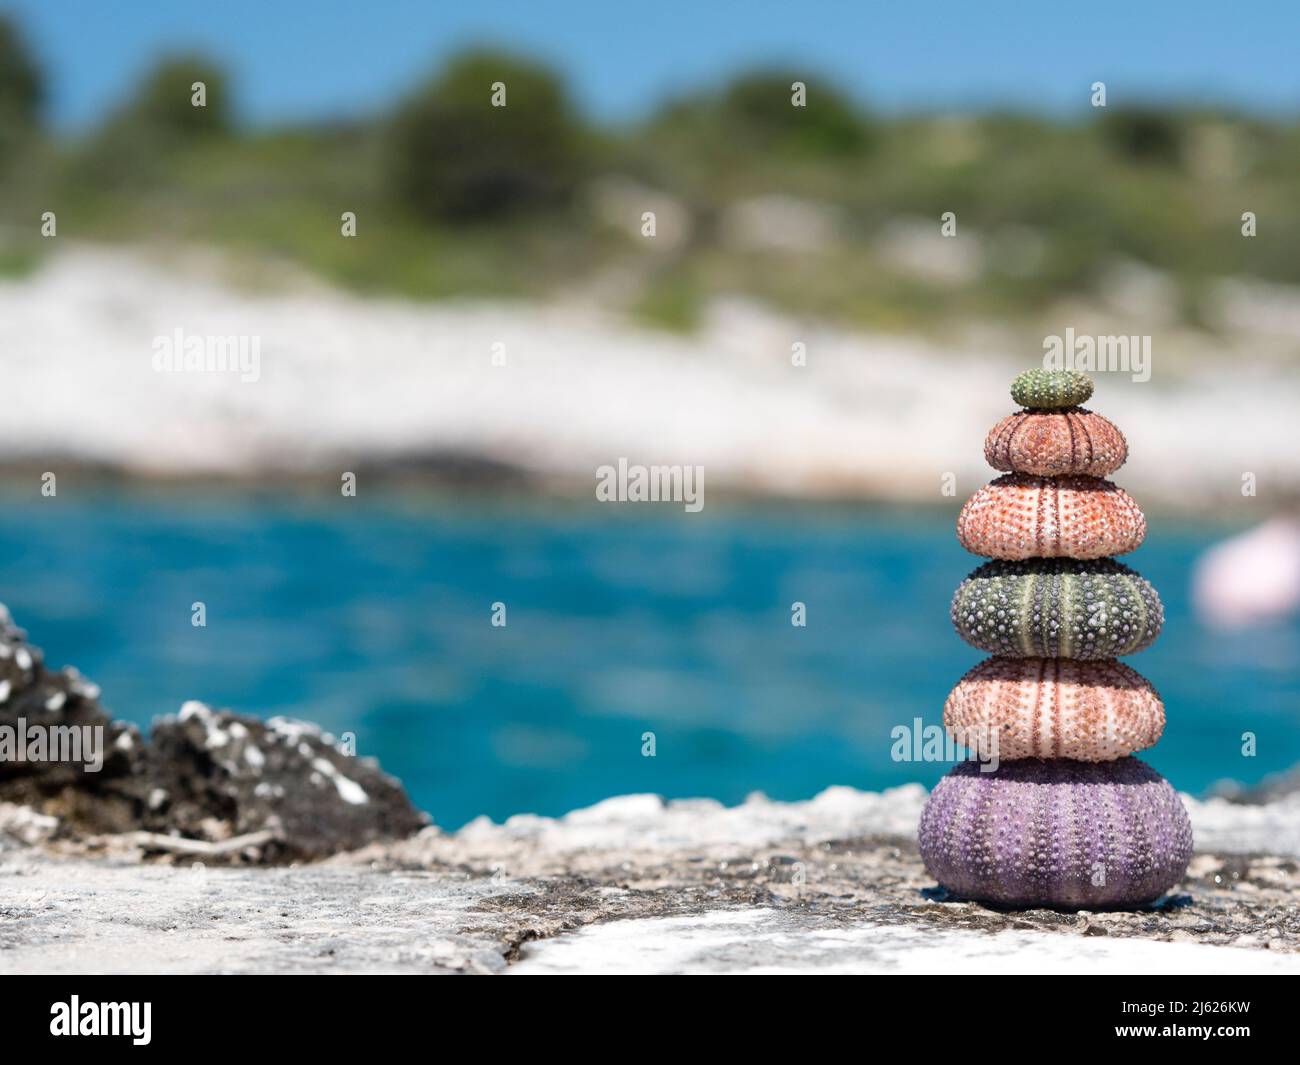 l'image montre une pile de coquillages naturels d'oursin de mer avec bleu océan et fond de plage en vacances avec l'île à l'arrière-plan Banque D'Images